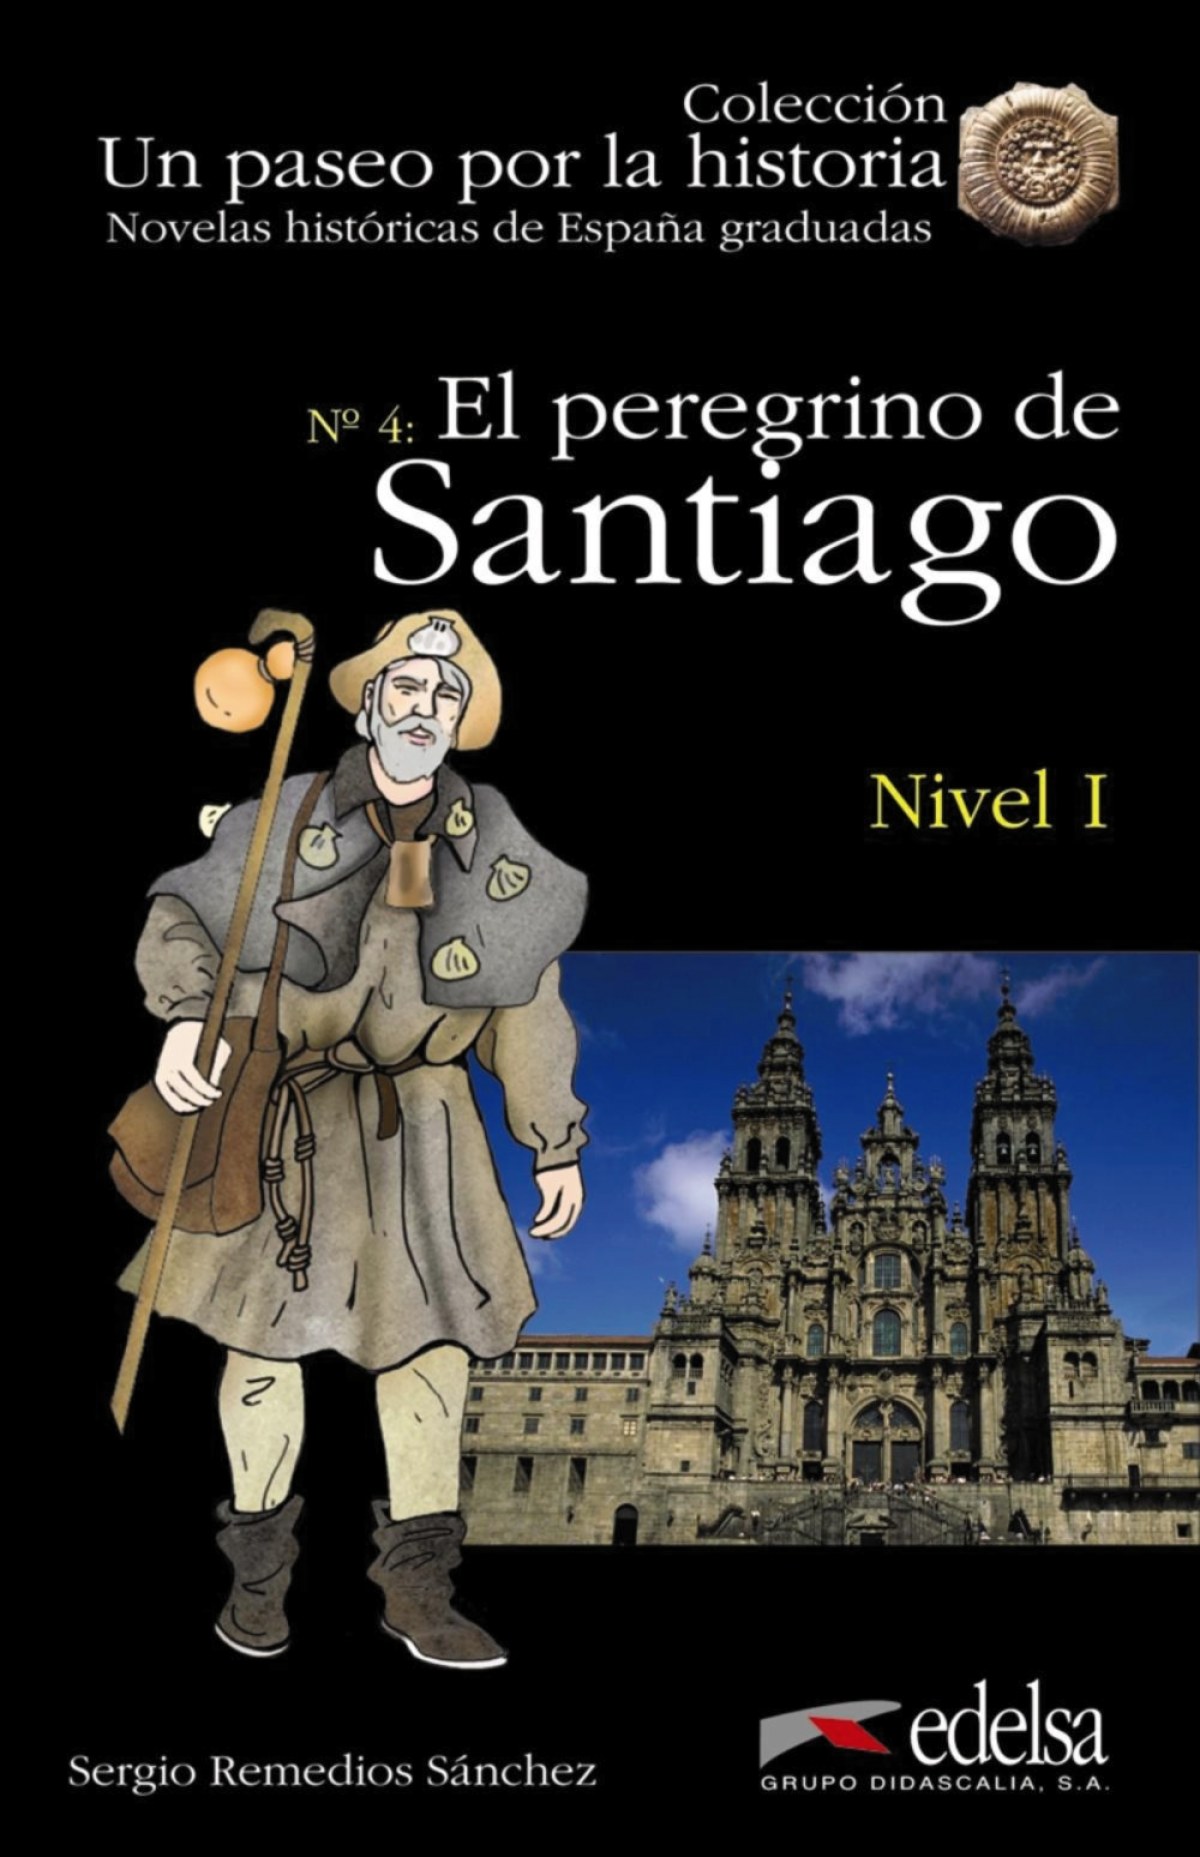 NHG 1 - El peregrino de Santiago (Lecturas - Jóvenes y adultos - Novelas históricas graduadas - Nivel A)